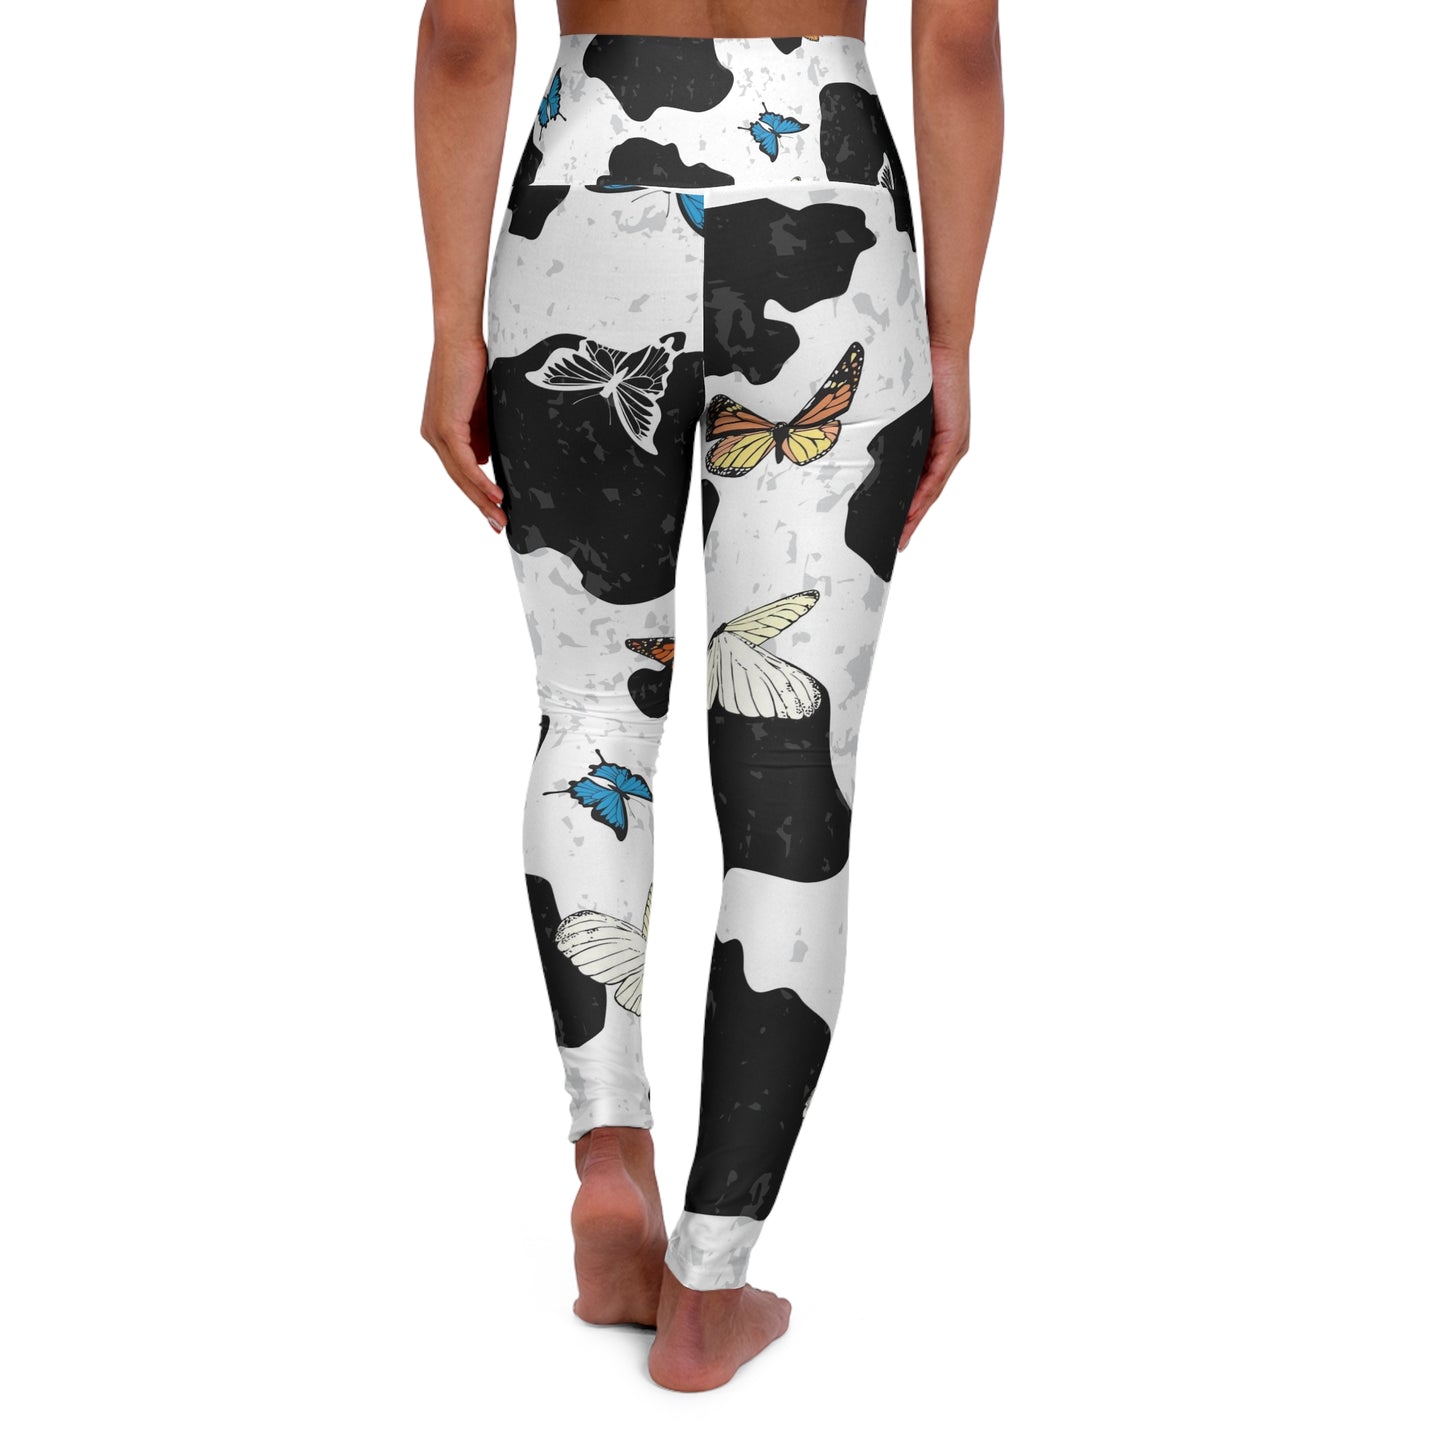 Cow print Leggings